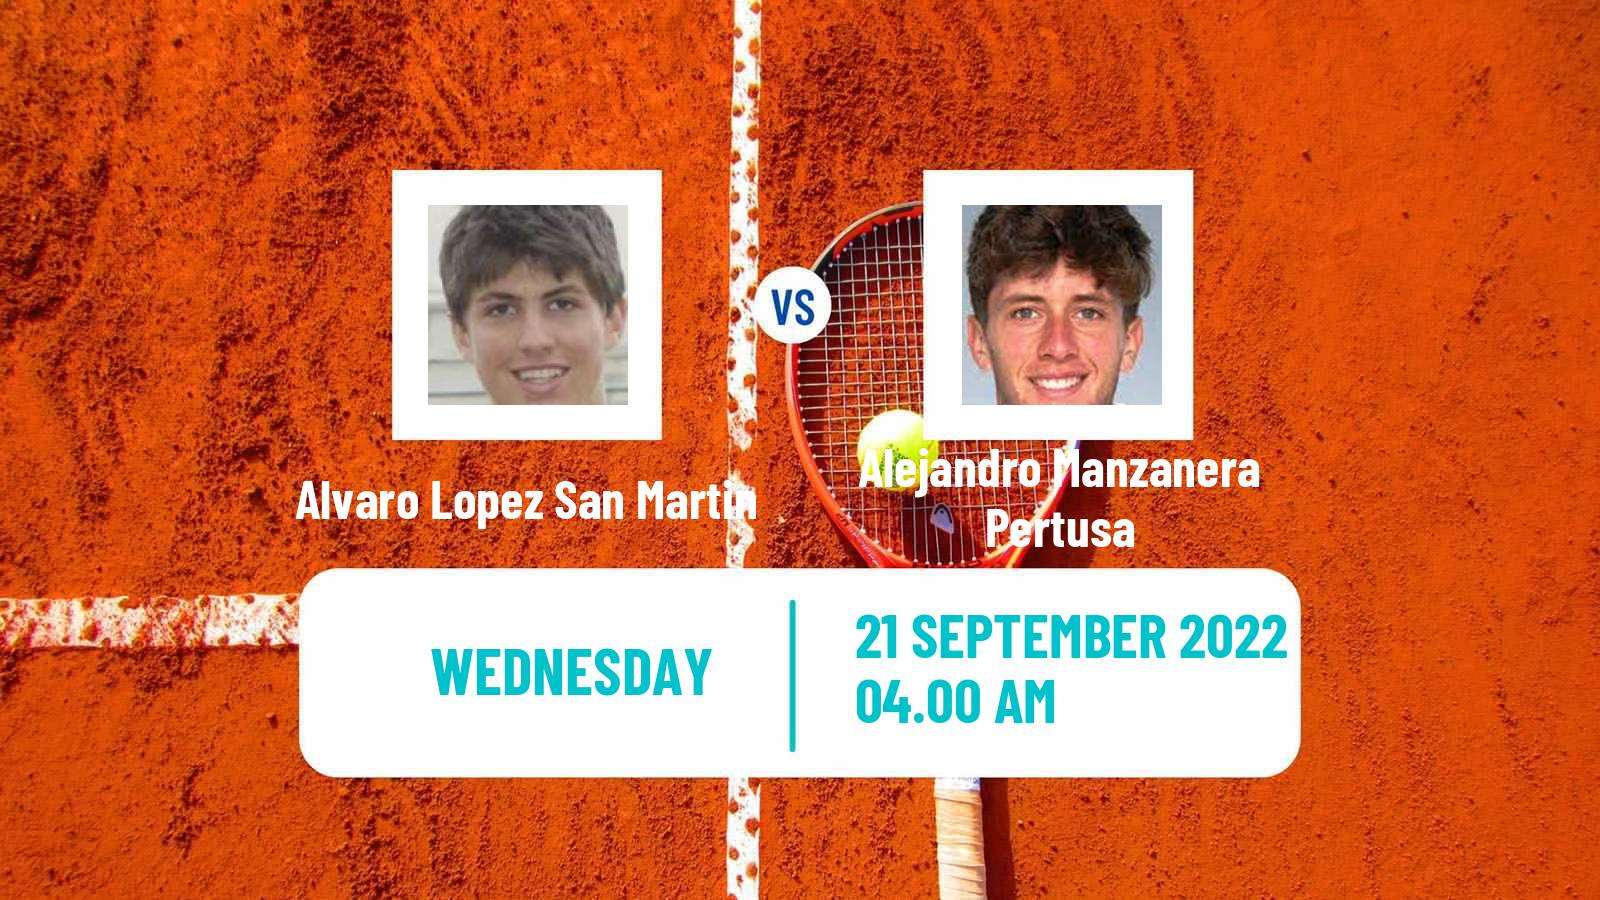 Tennis ITF Tournaments Alvaro Lopez San Martin - Alejandro Manzanera Pertusa